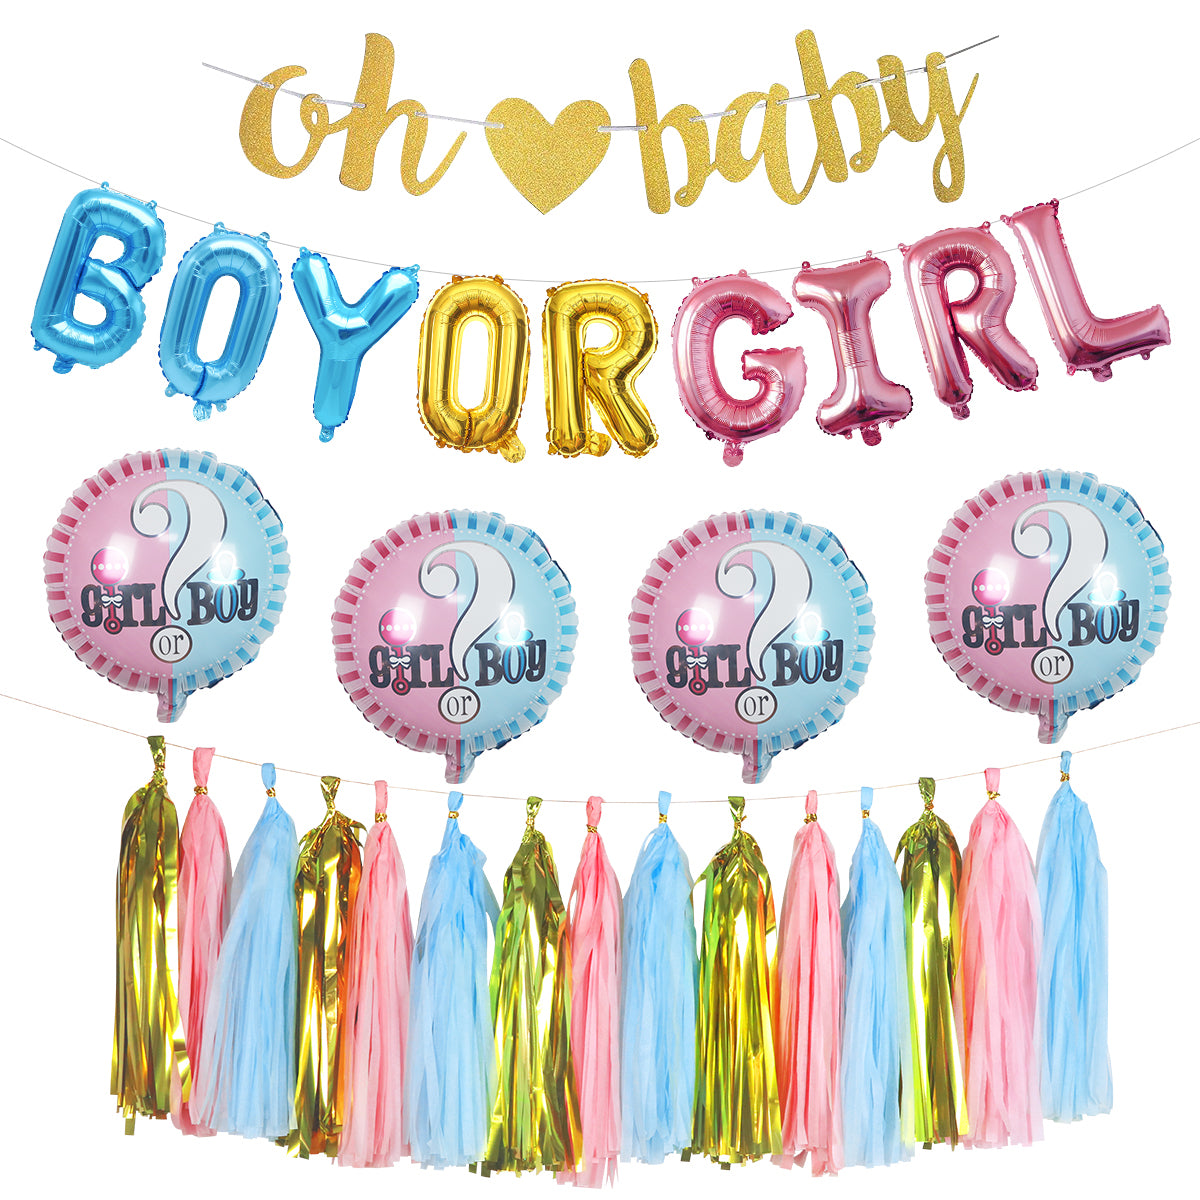 Boy or Girl Gender Reveal Decoration Kit